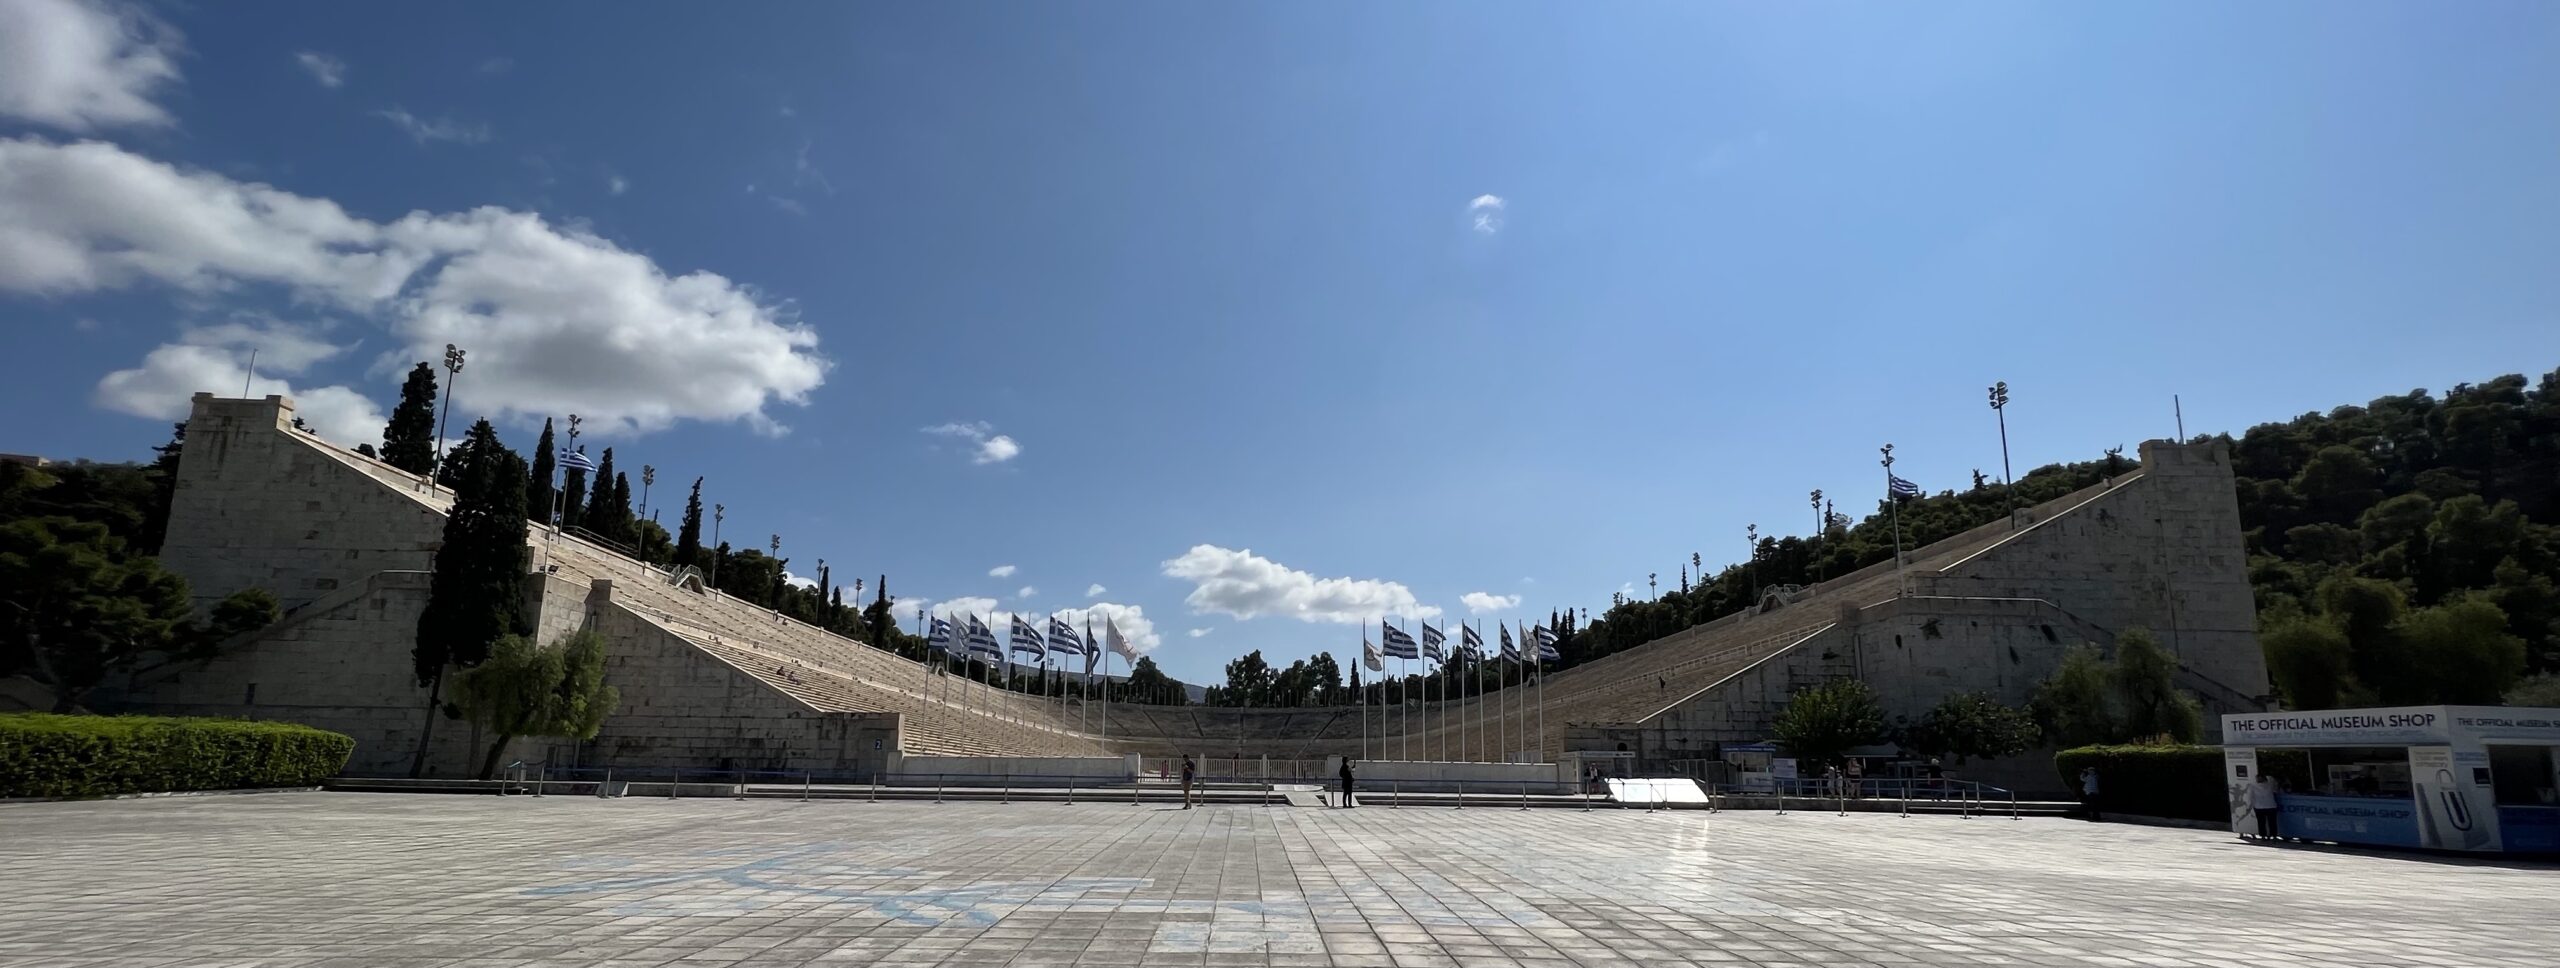 Panathinaiko-Stadion, Athen